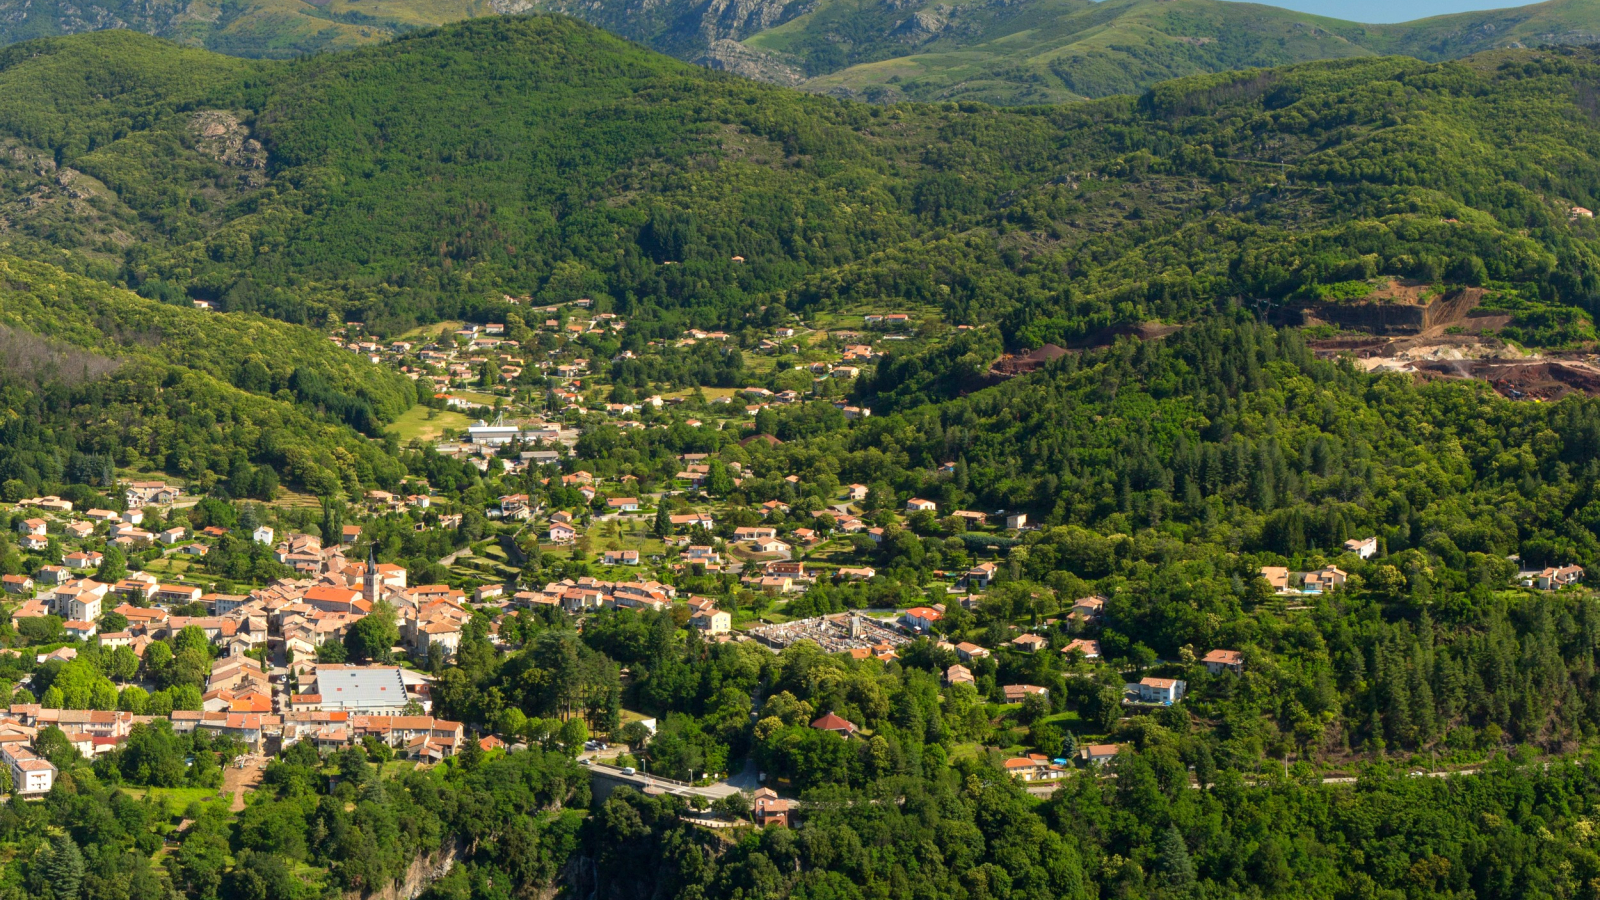 Thueyts - Le village et la vallée de l'Ardèche vus de Bouchard-zoom avec vue gravenne ©S.BUGNON